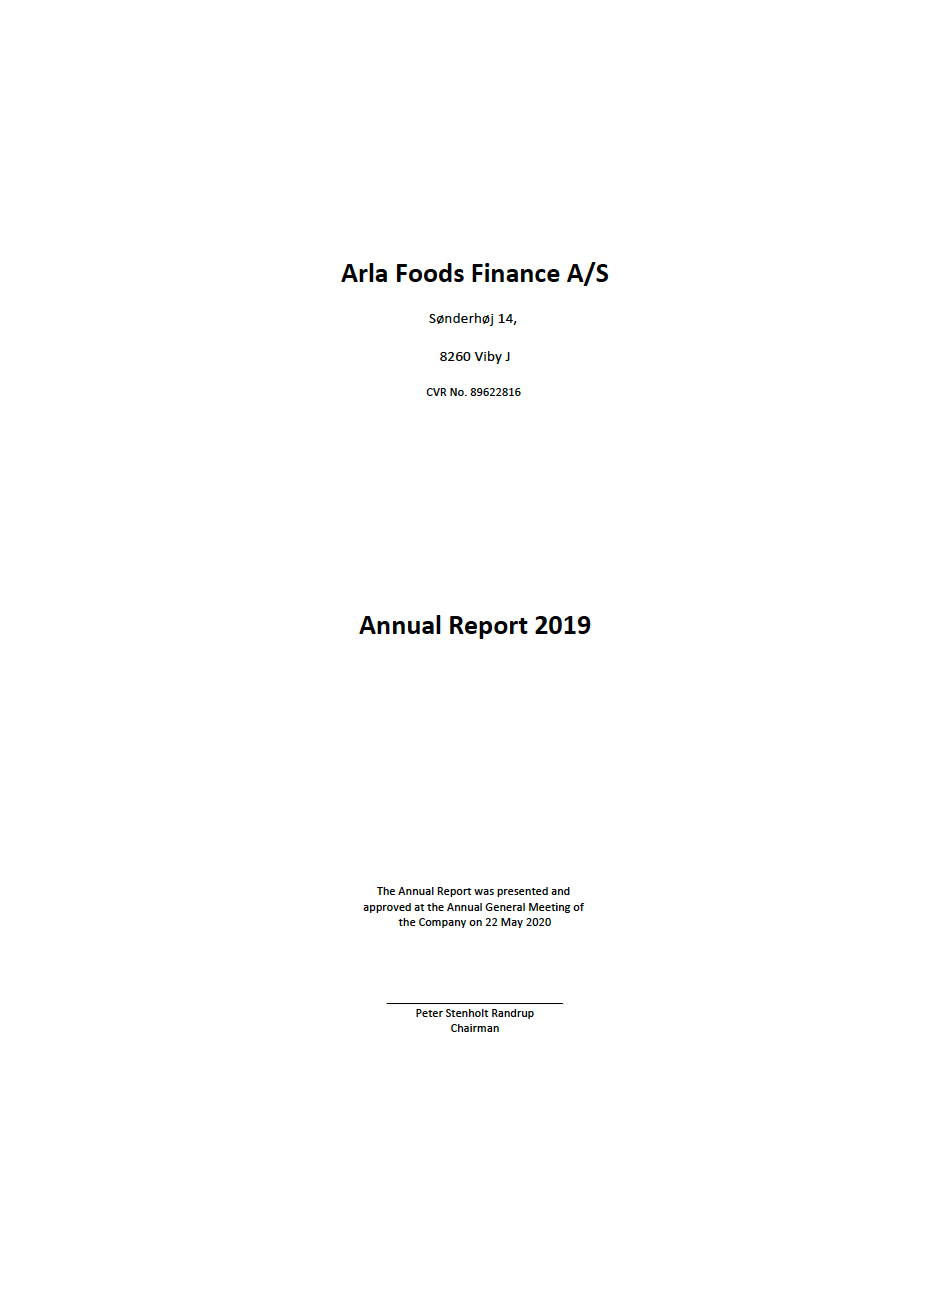 Arla Foods Finance A/S 2019